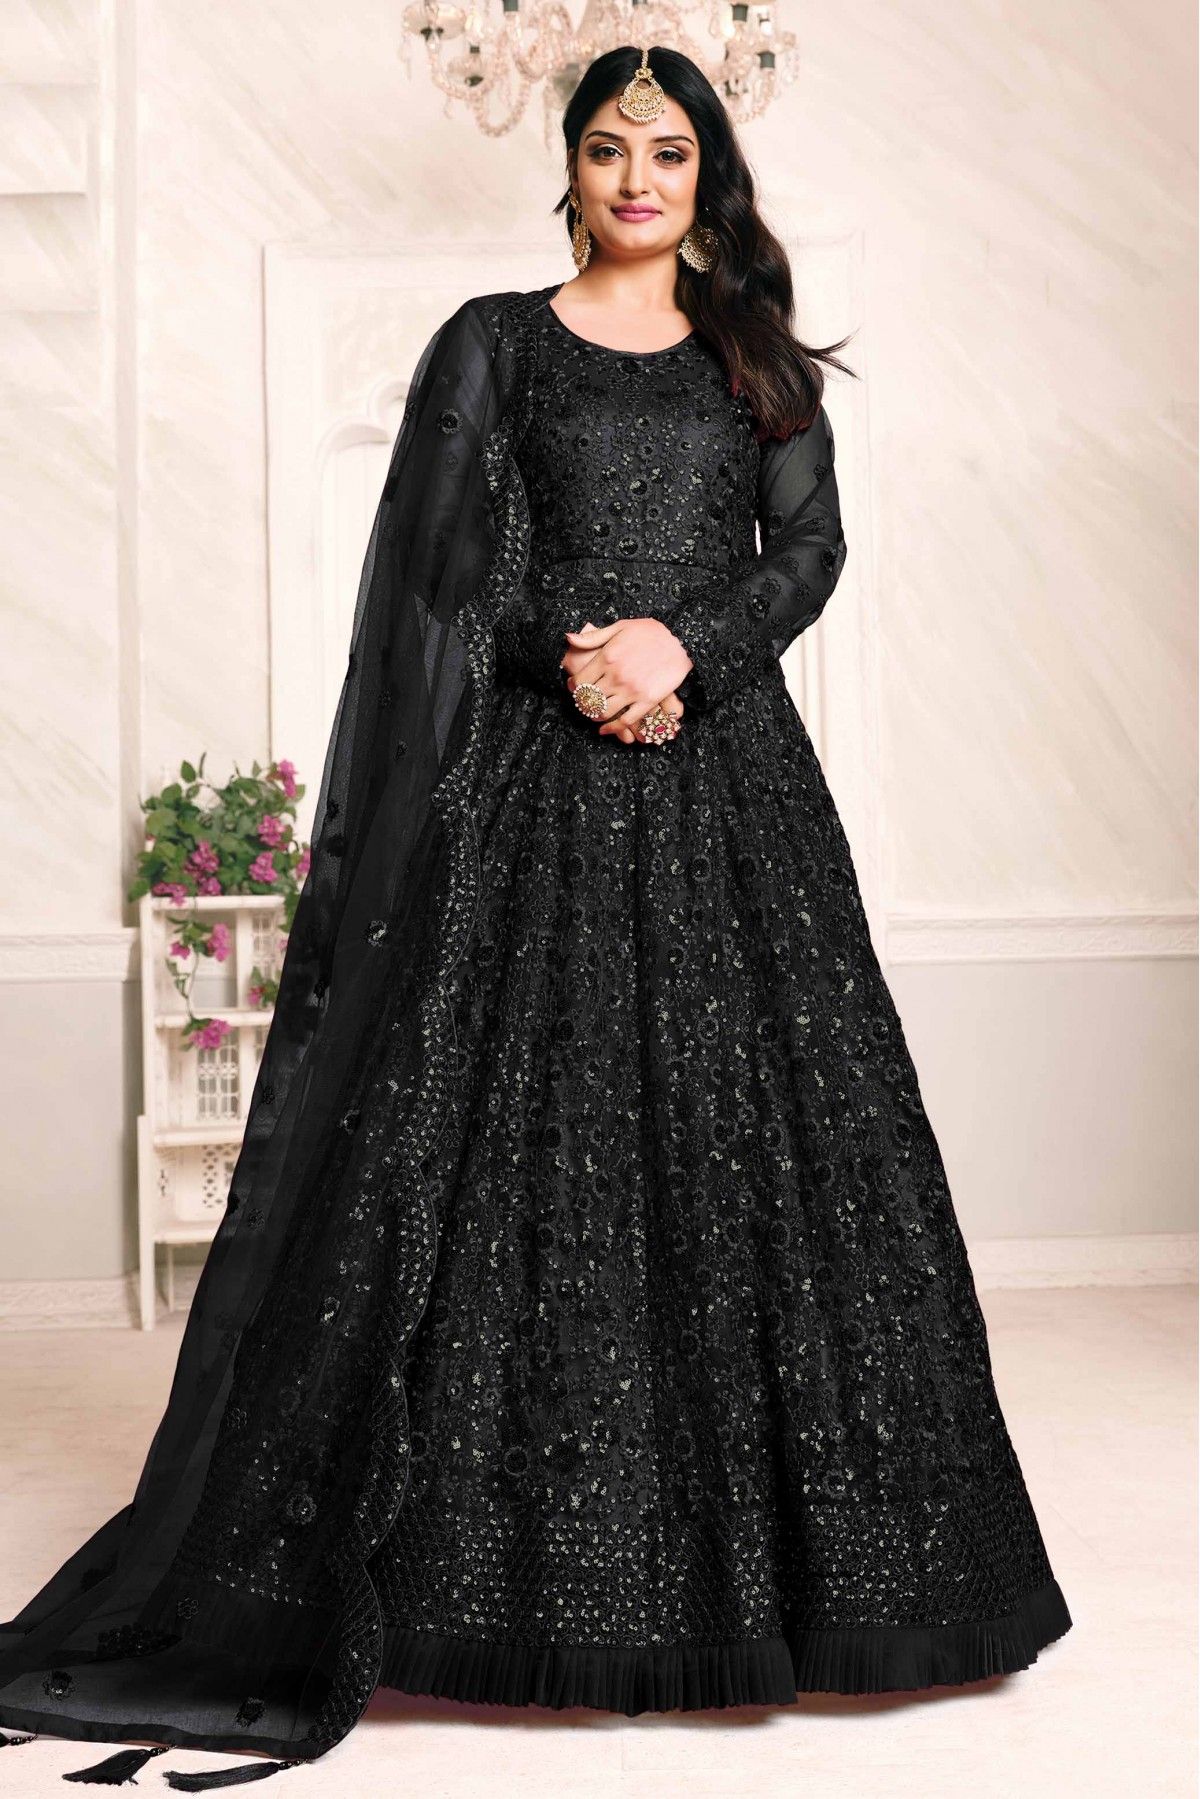 Black Colored Georgette Anarkali Suit With Dupatta - Anarkali Dresses -  Salwar Suits - Indian